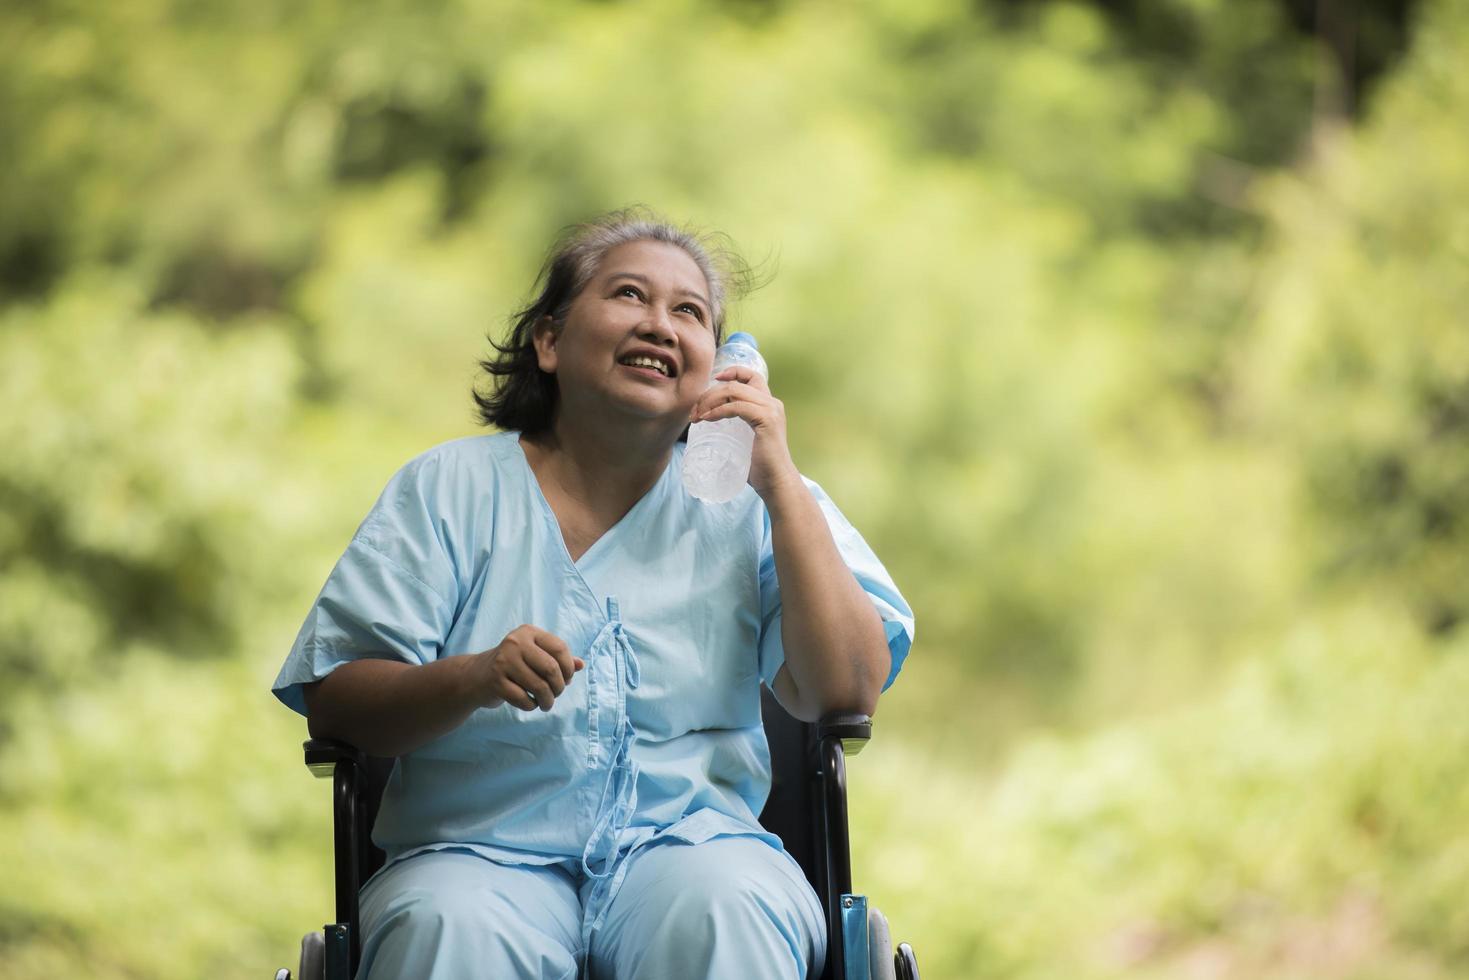 gammal kvinna sitter på rullstol med vattenflaska efter att ha tagit ett läkemedel foto